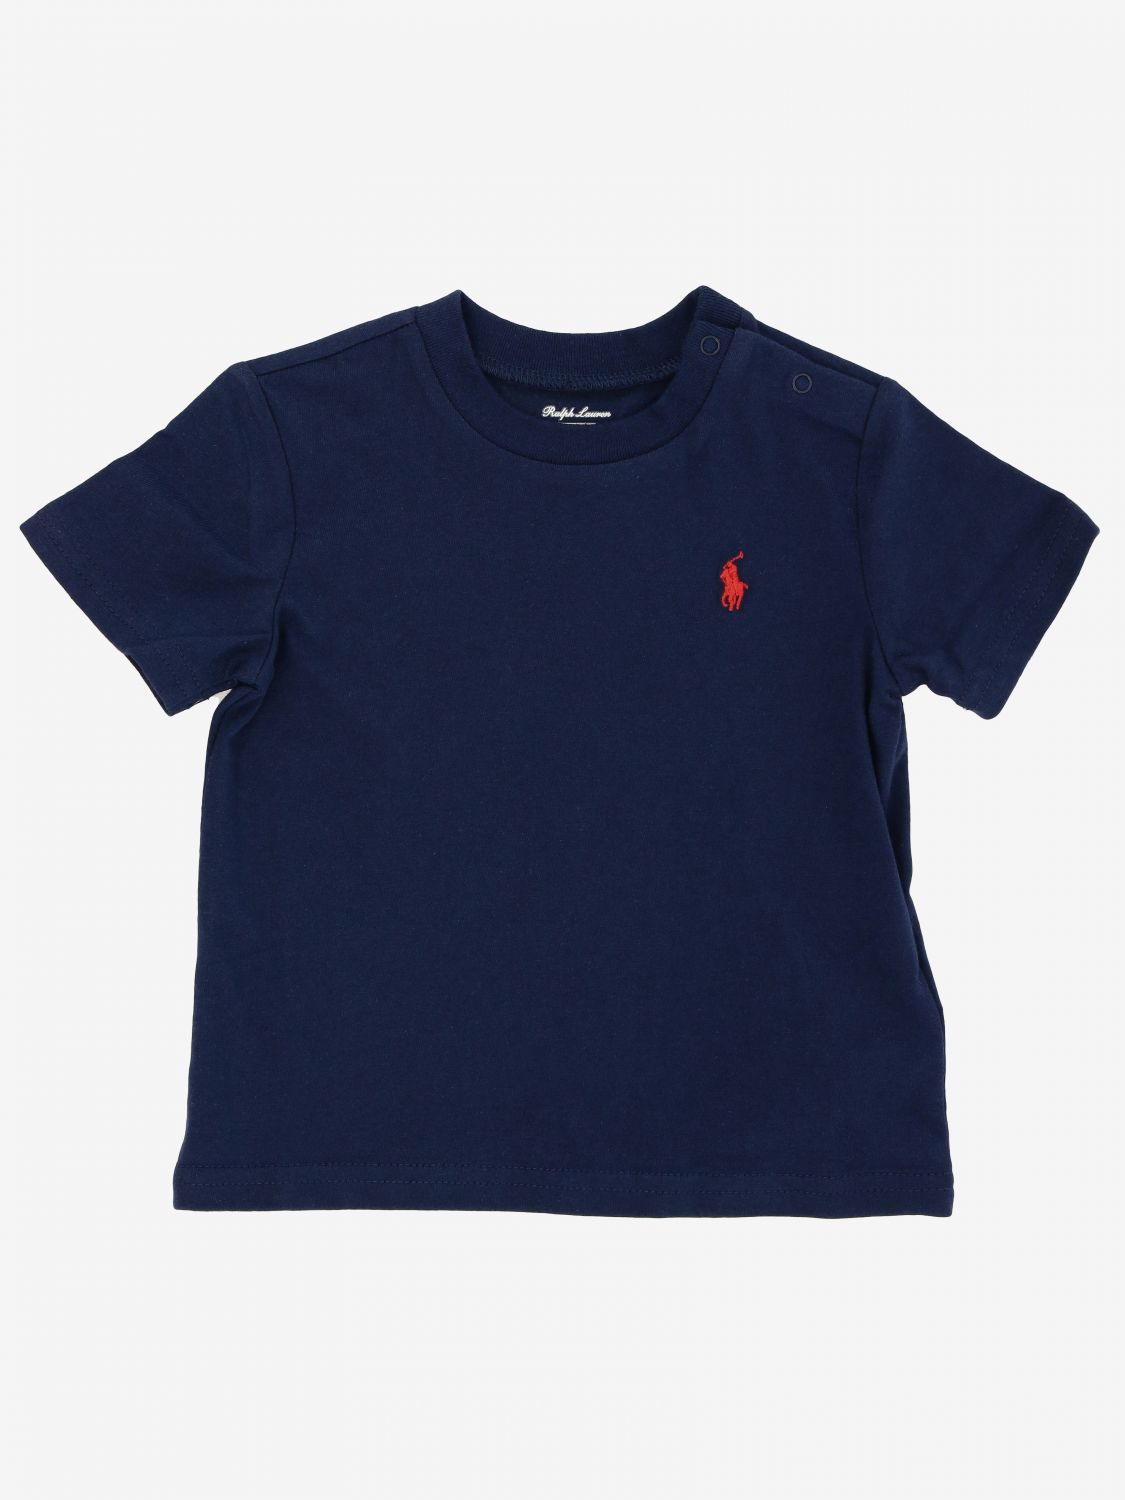 infant ralph lauren shirt